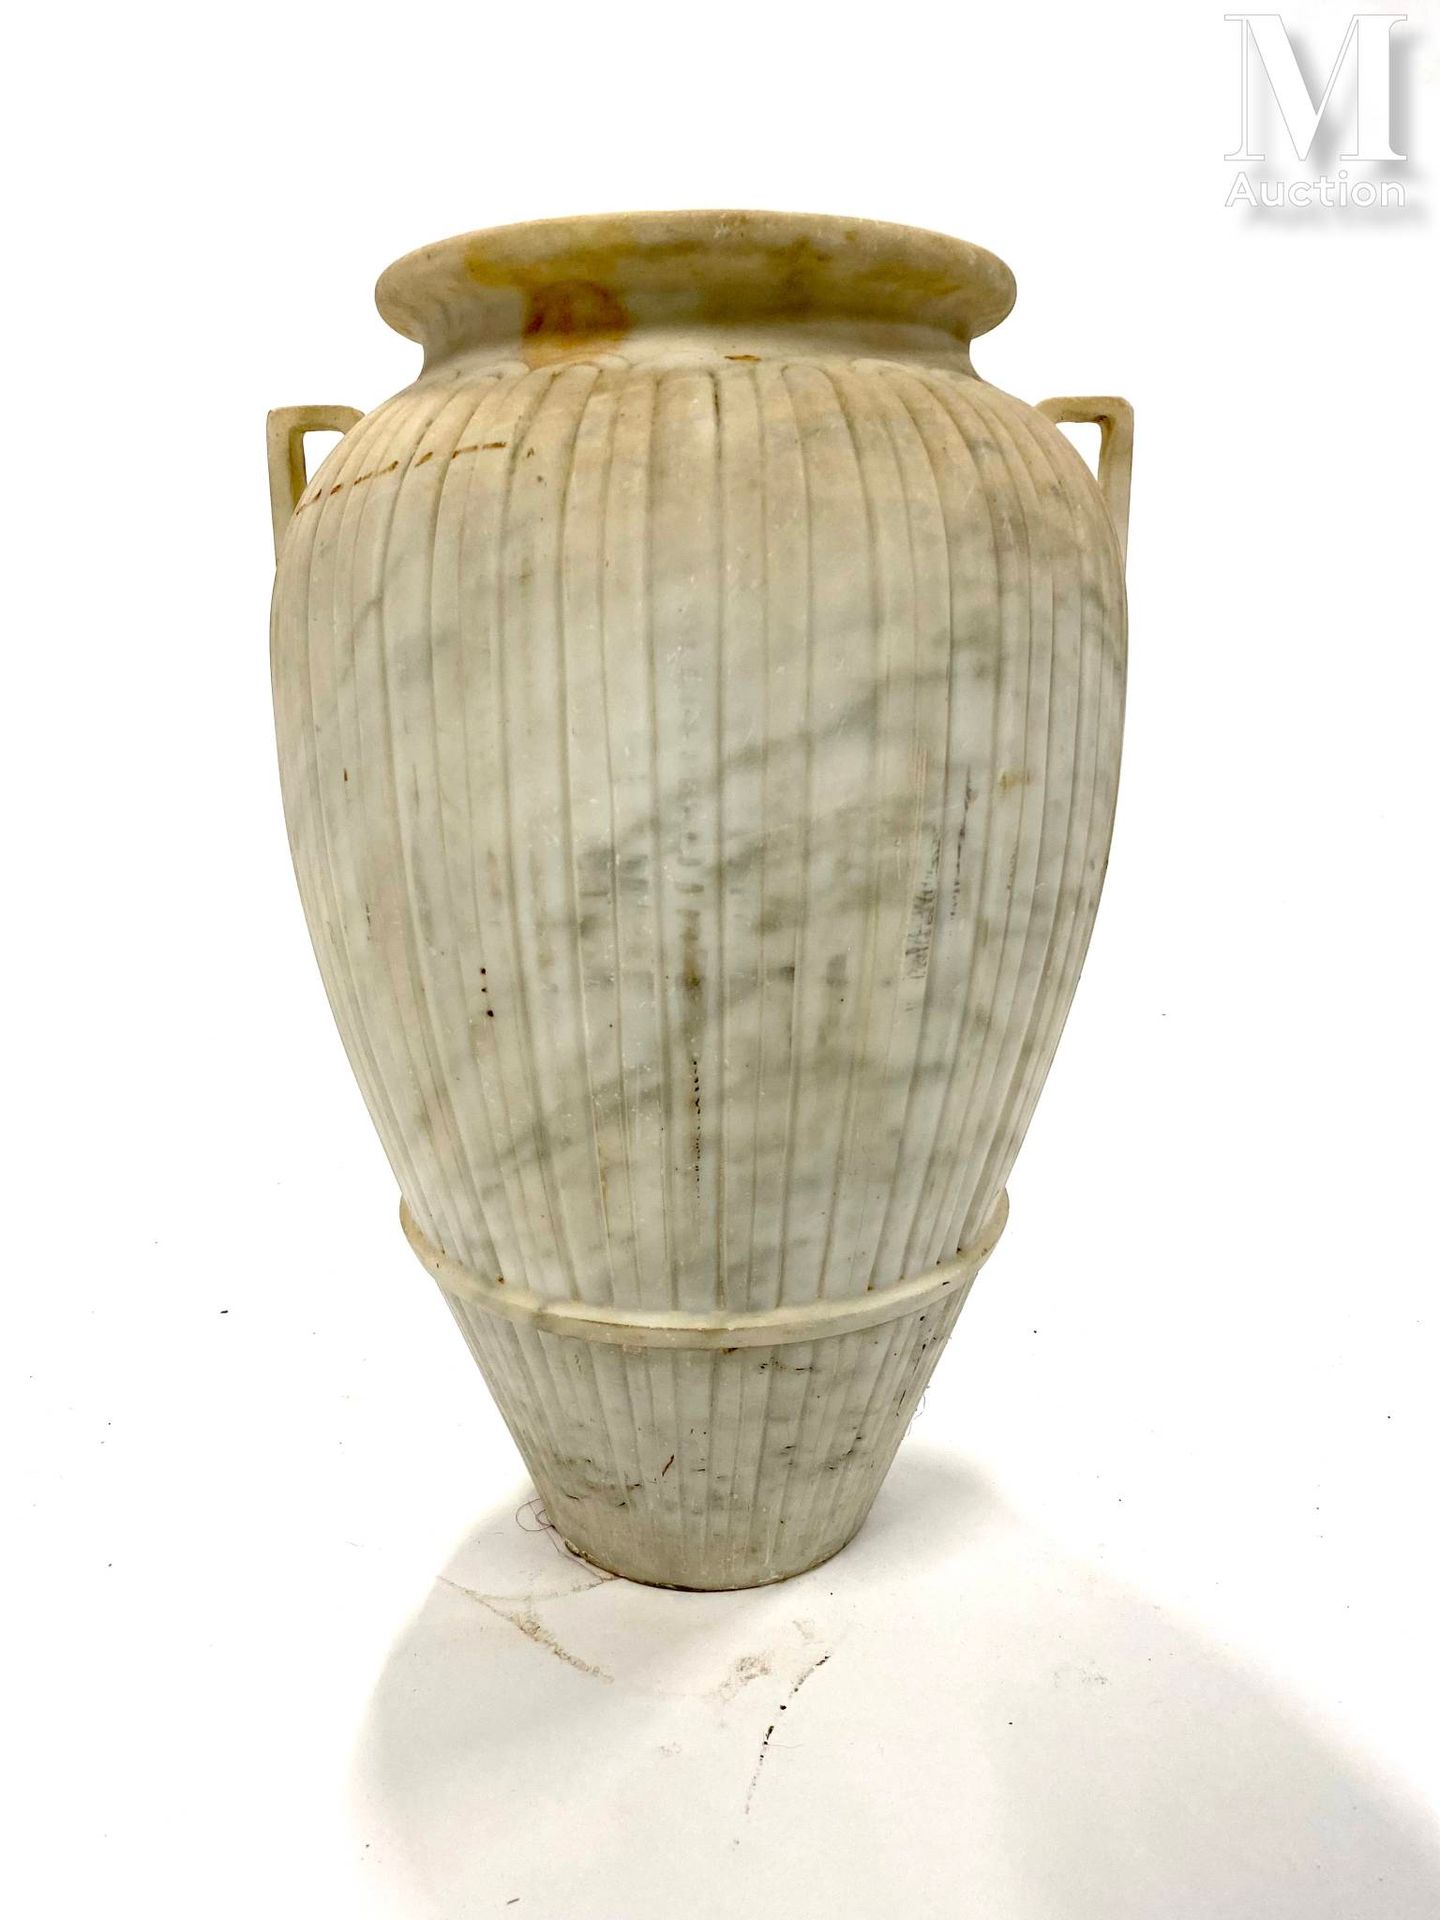 Vase en marbre con dos asas, el astil con decoración estriada
Altura: 48 cm.